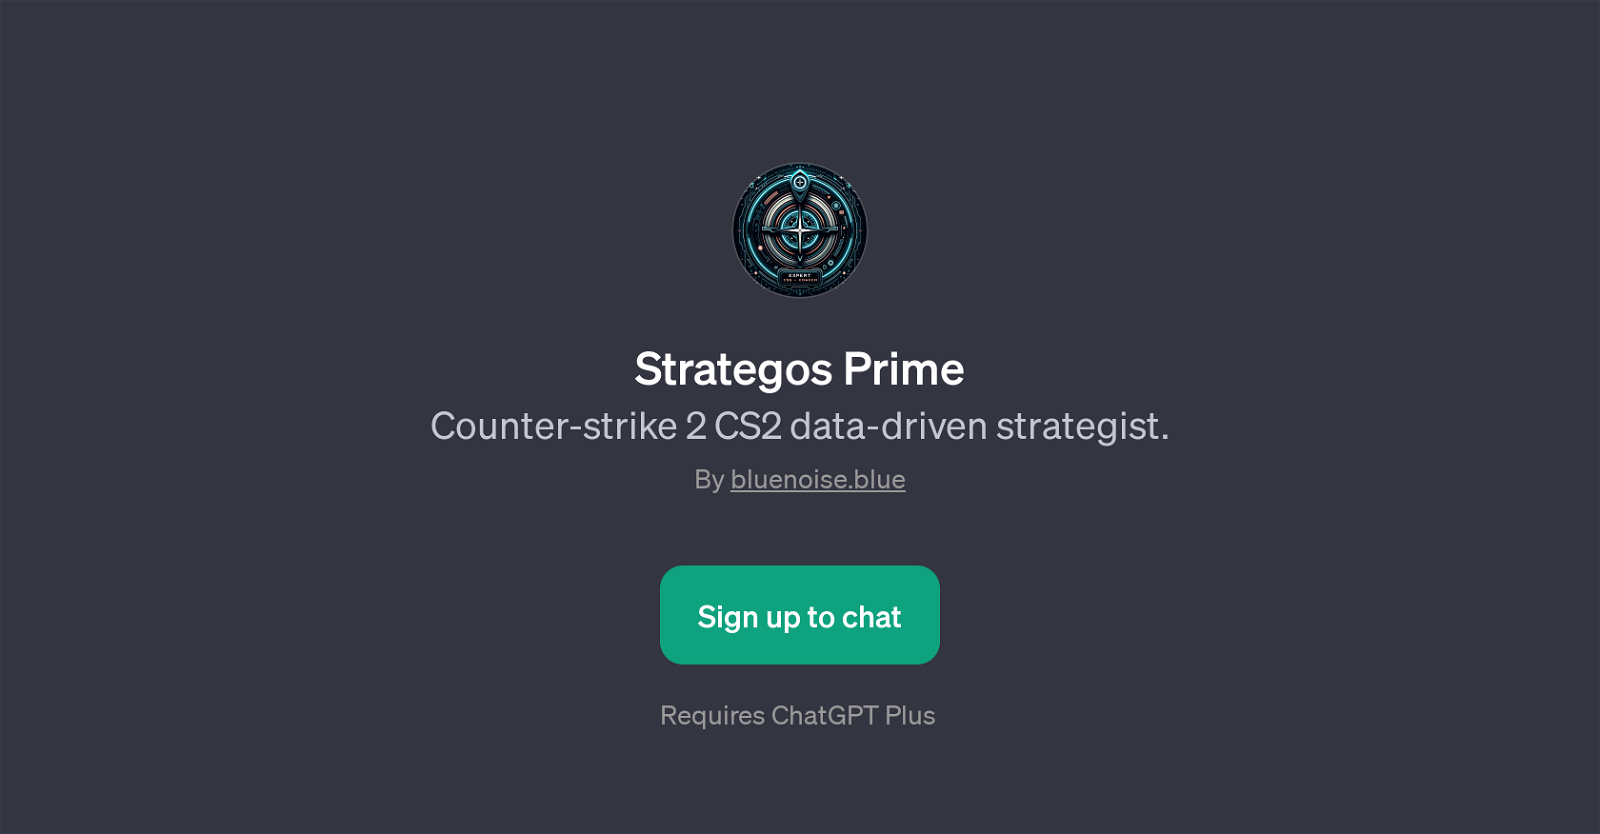 Strategos Prime website